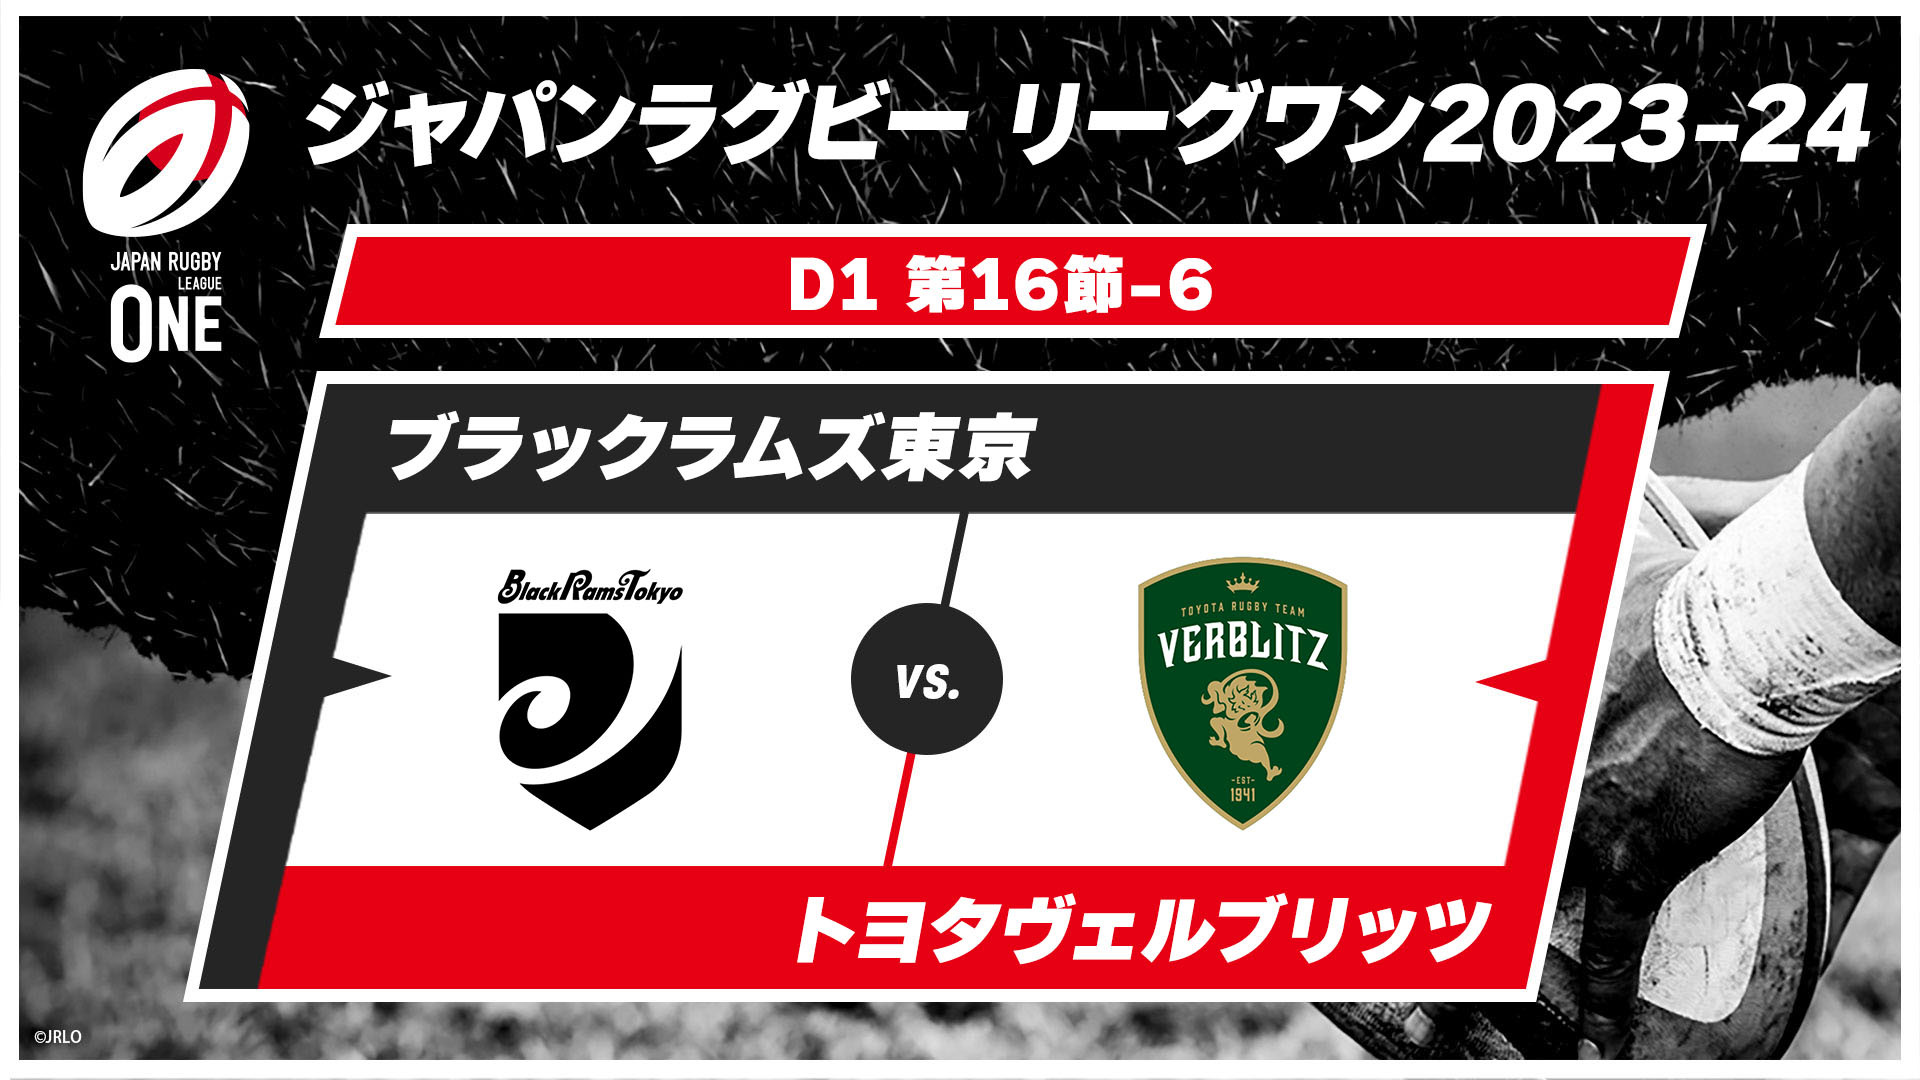 【第16節ハイライト】ブラックラムズ東京 vs. トヨタヴェルブリッツ